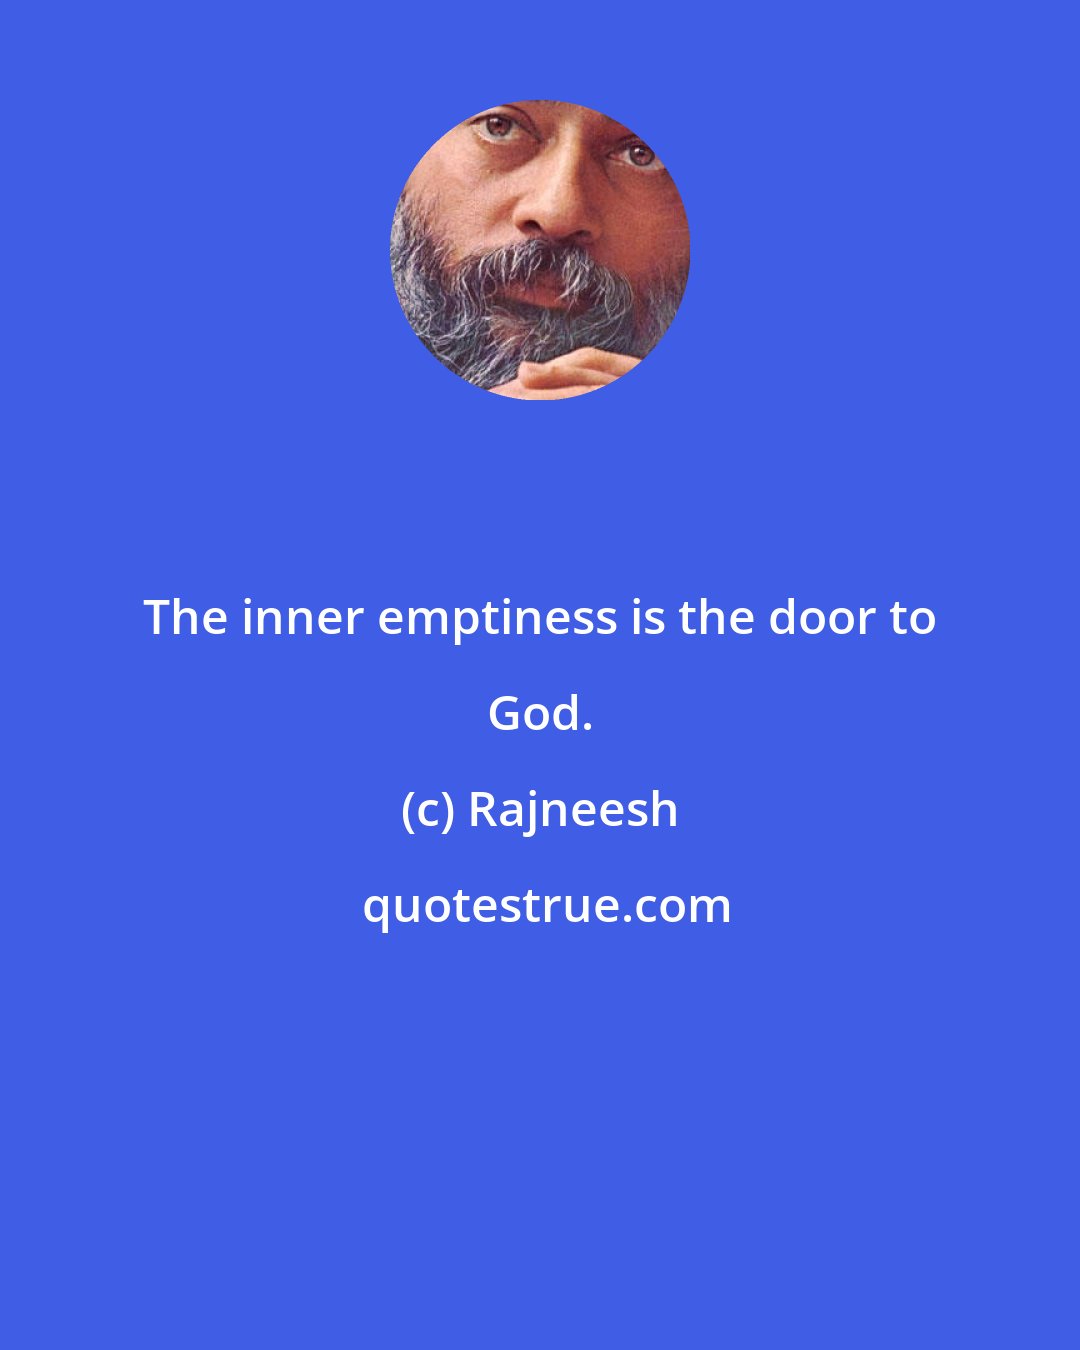 Rajneesh: The inner emptiness is the door to God.